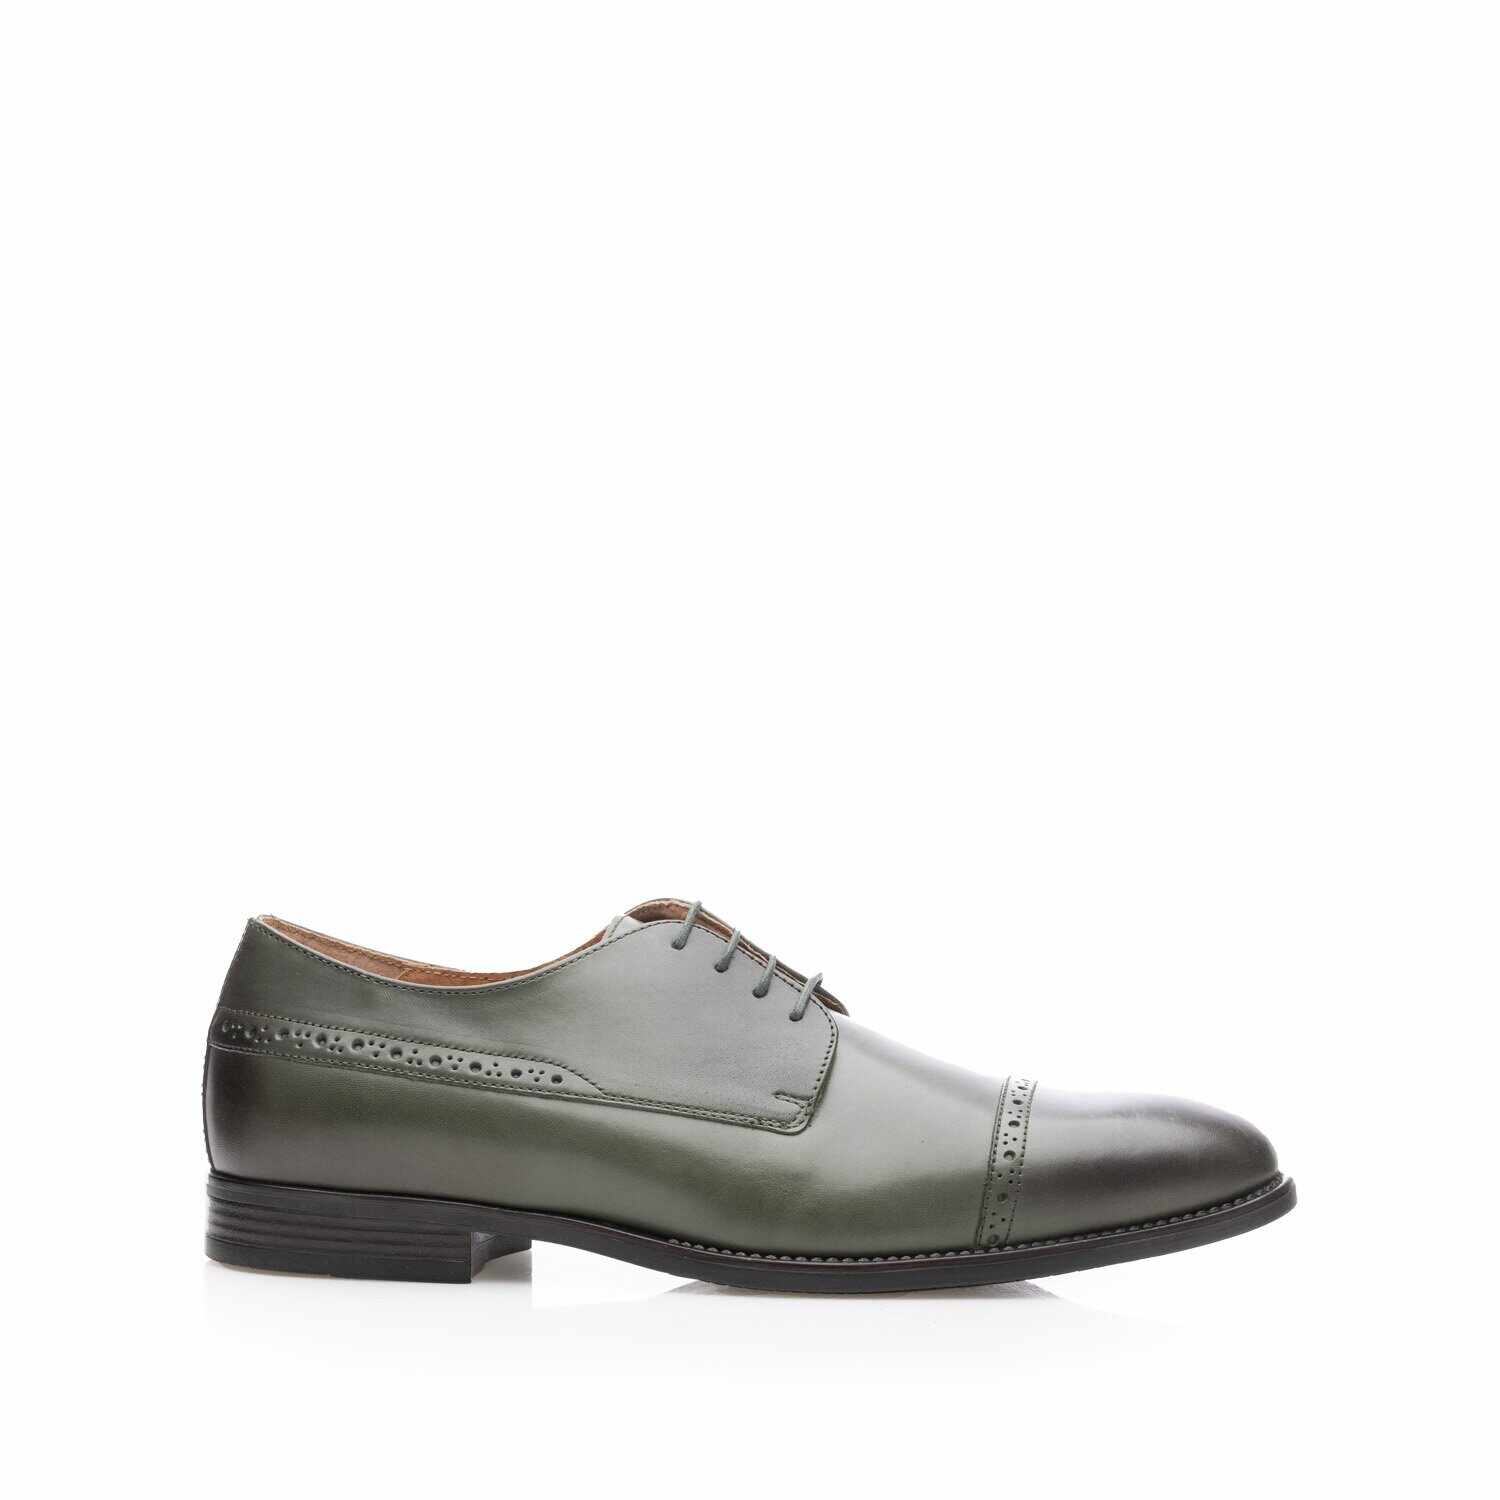 Pantofi eleganți bărbați din piele naturală,Leofex - 510 Verde Box